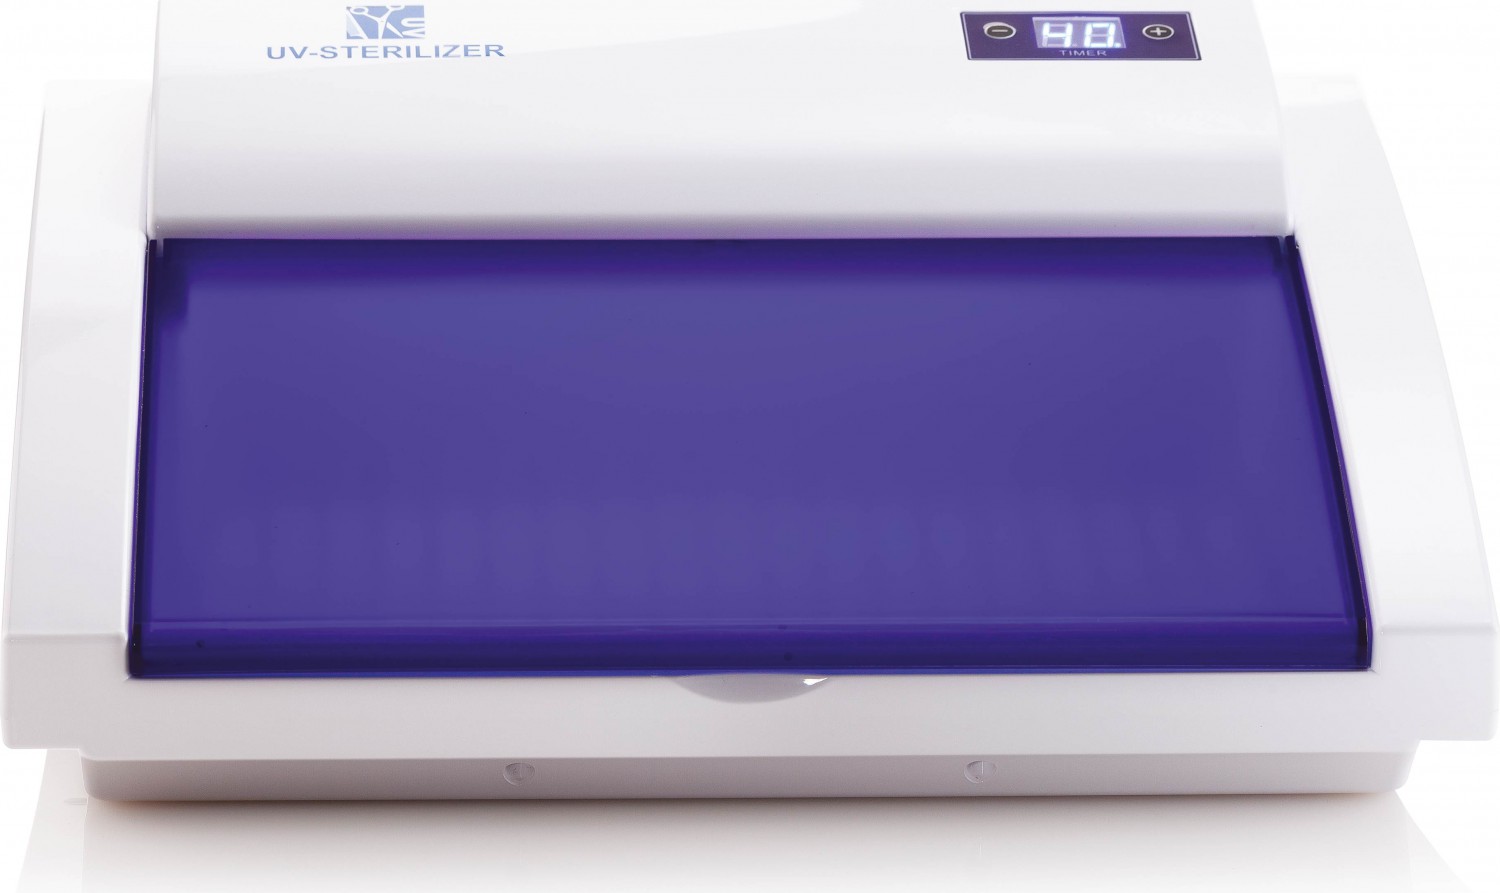  XanitaliaPro Stérilisateur Steril Pro UV pour les salons de beauté 